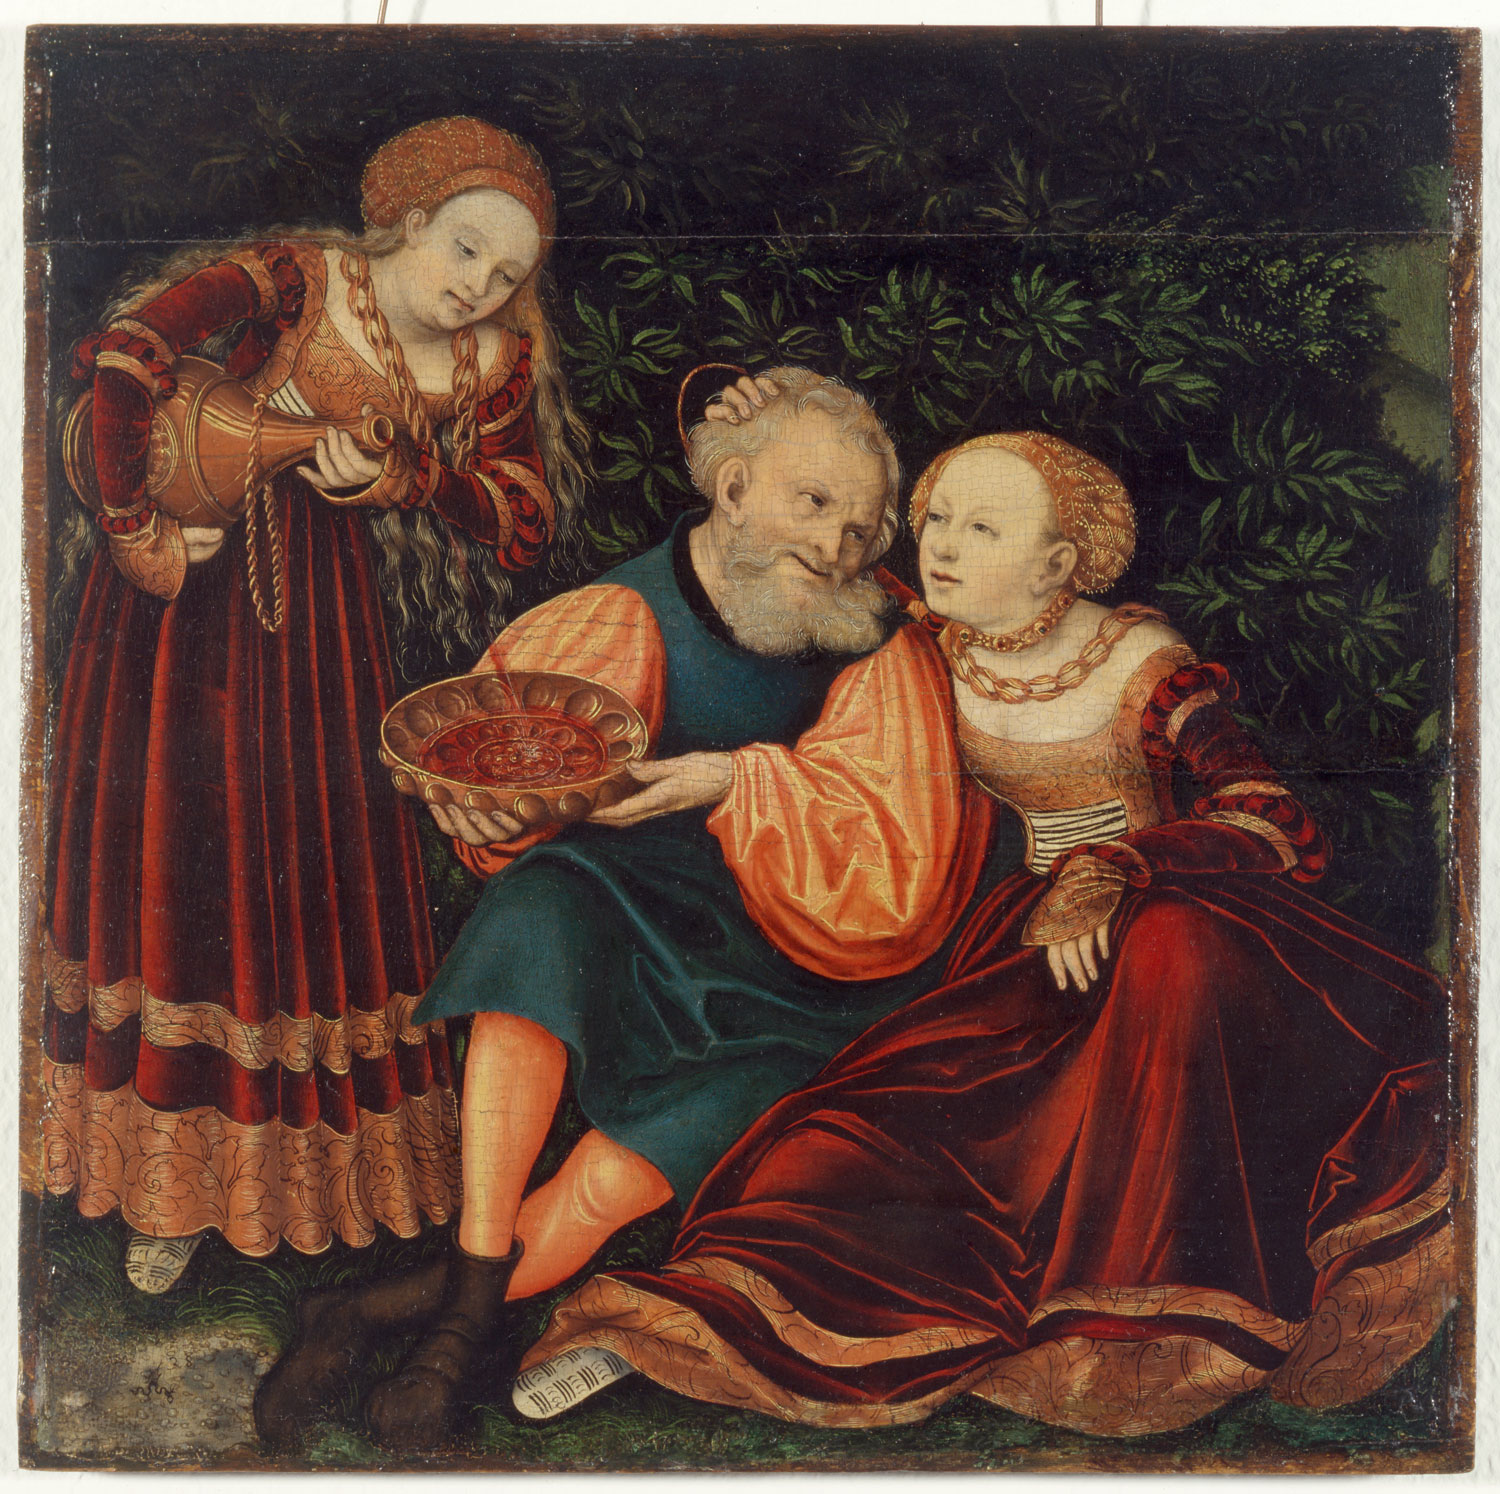 Lucas Cranach d.Ä., Lot und seine Töchter, 1528